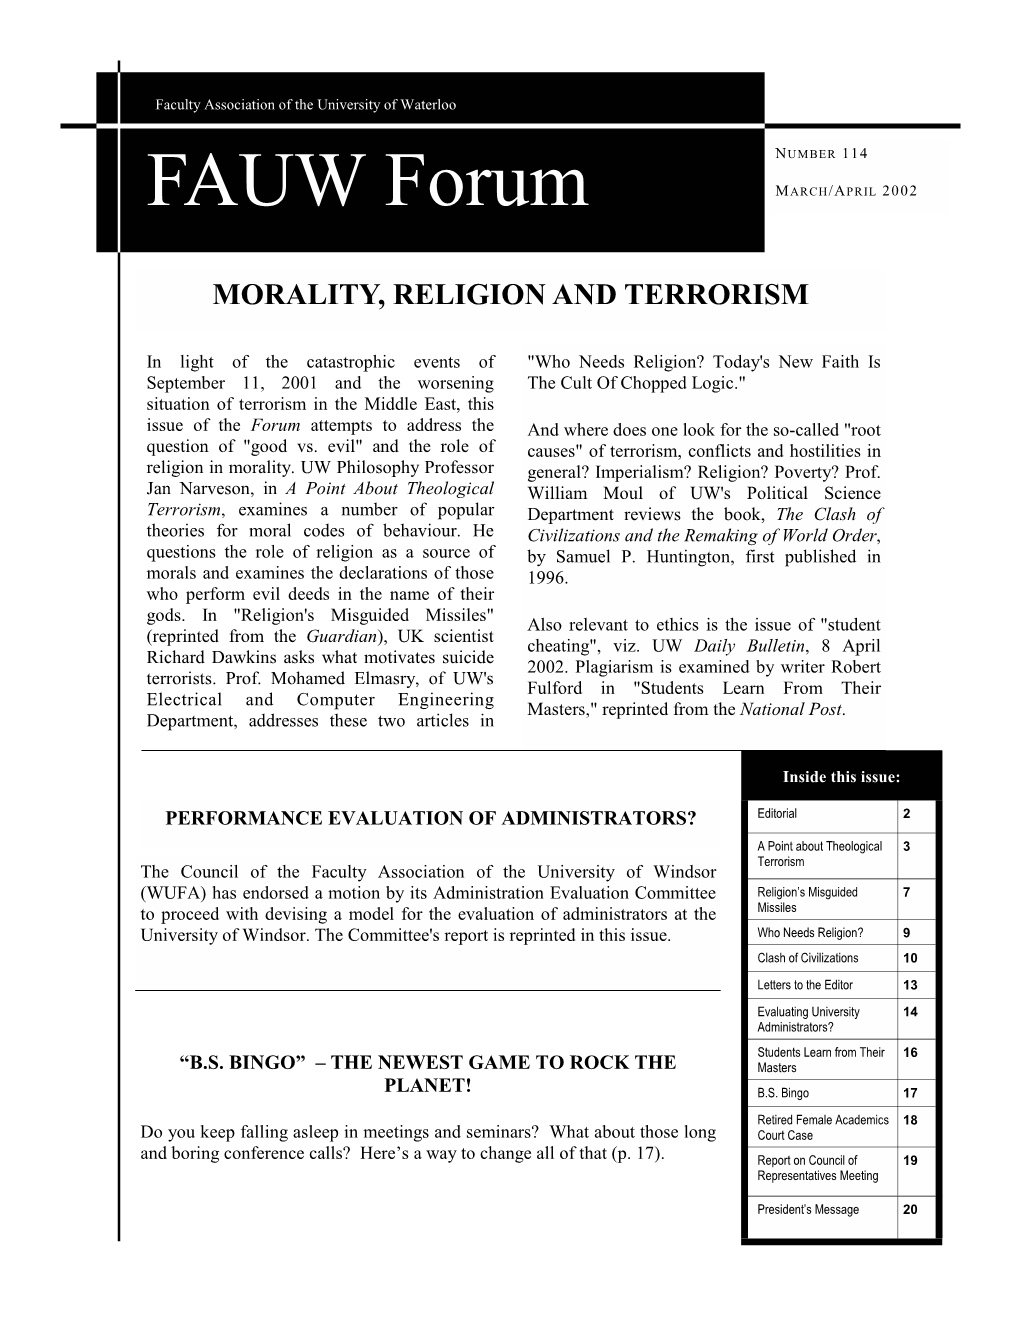 FAUW Forum MARCH/APRIL 2002